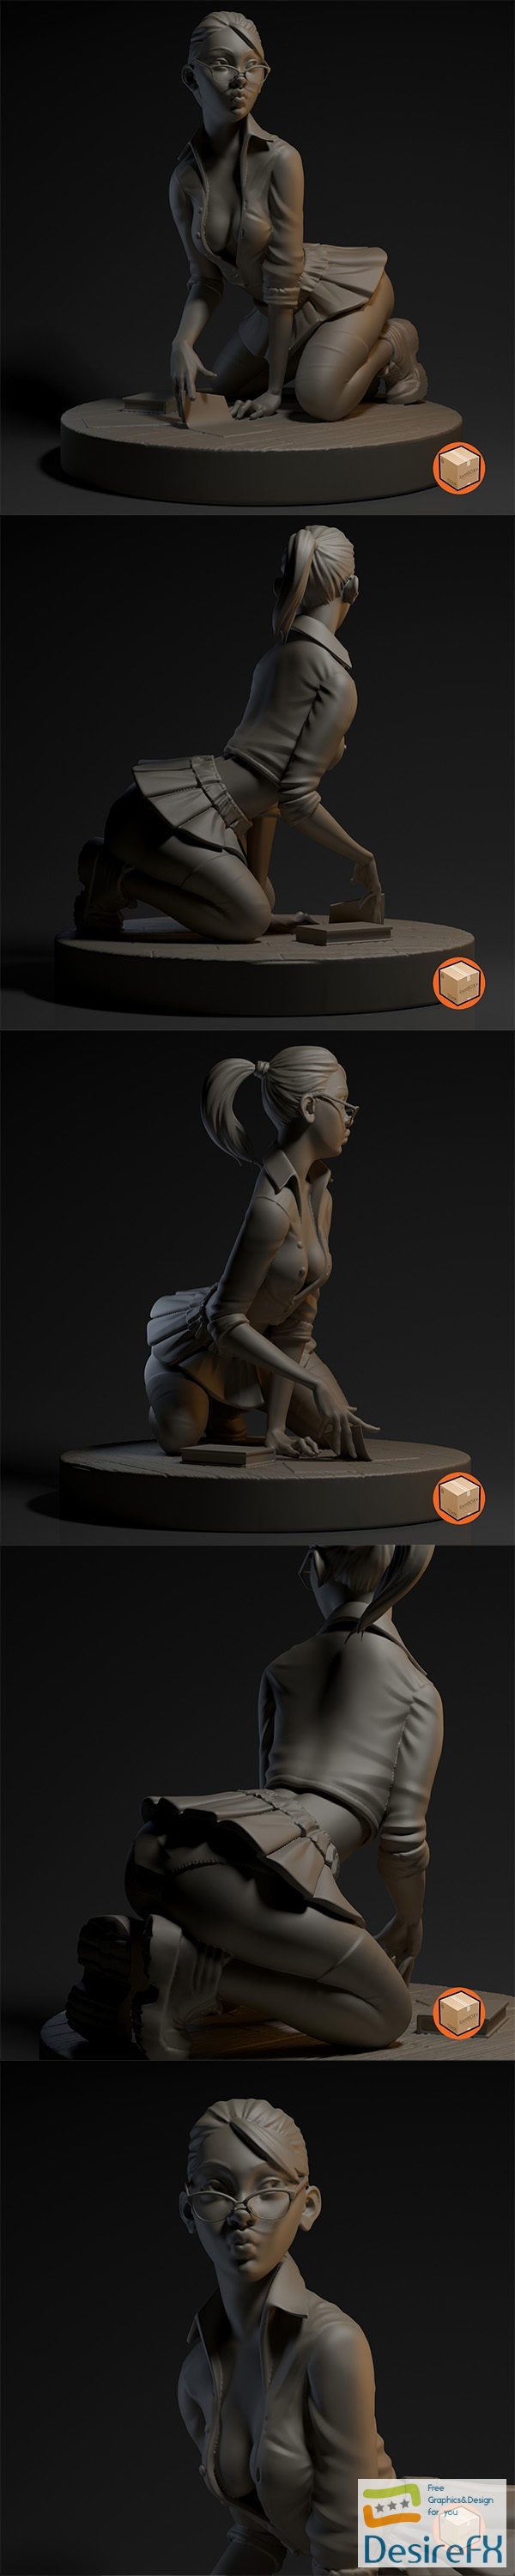 LSS 001 – Jill 01 – 3D Print